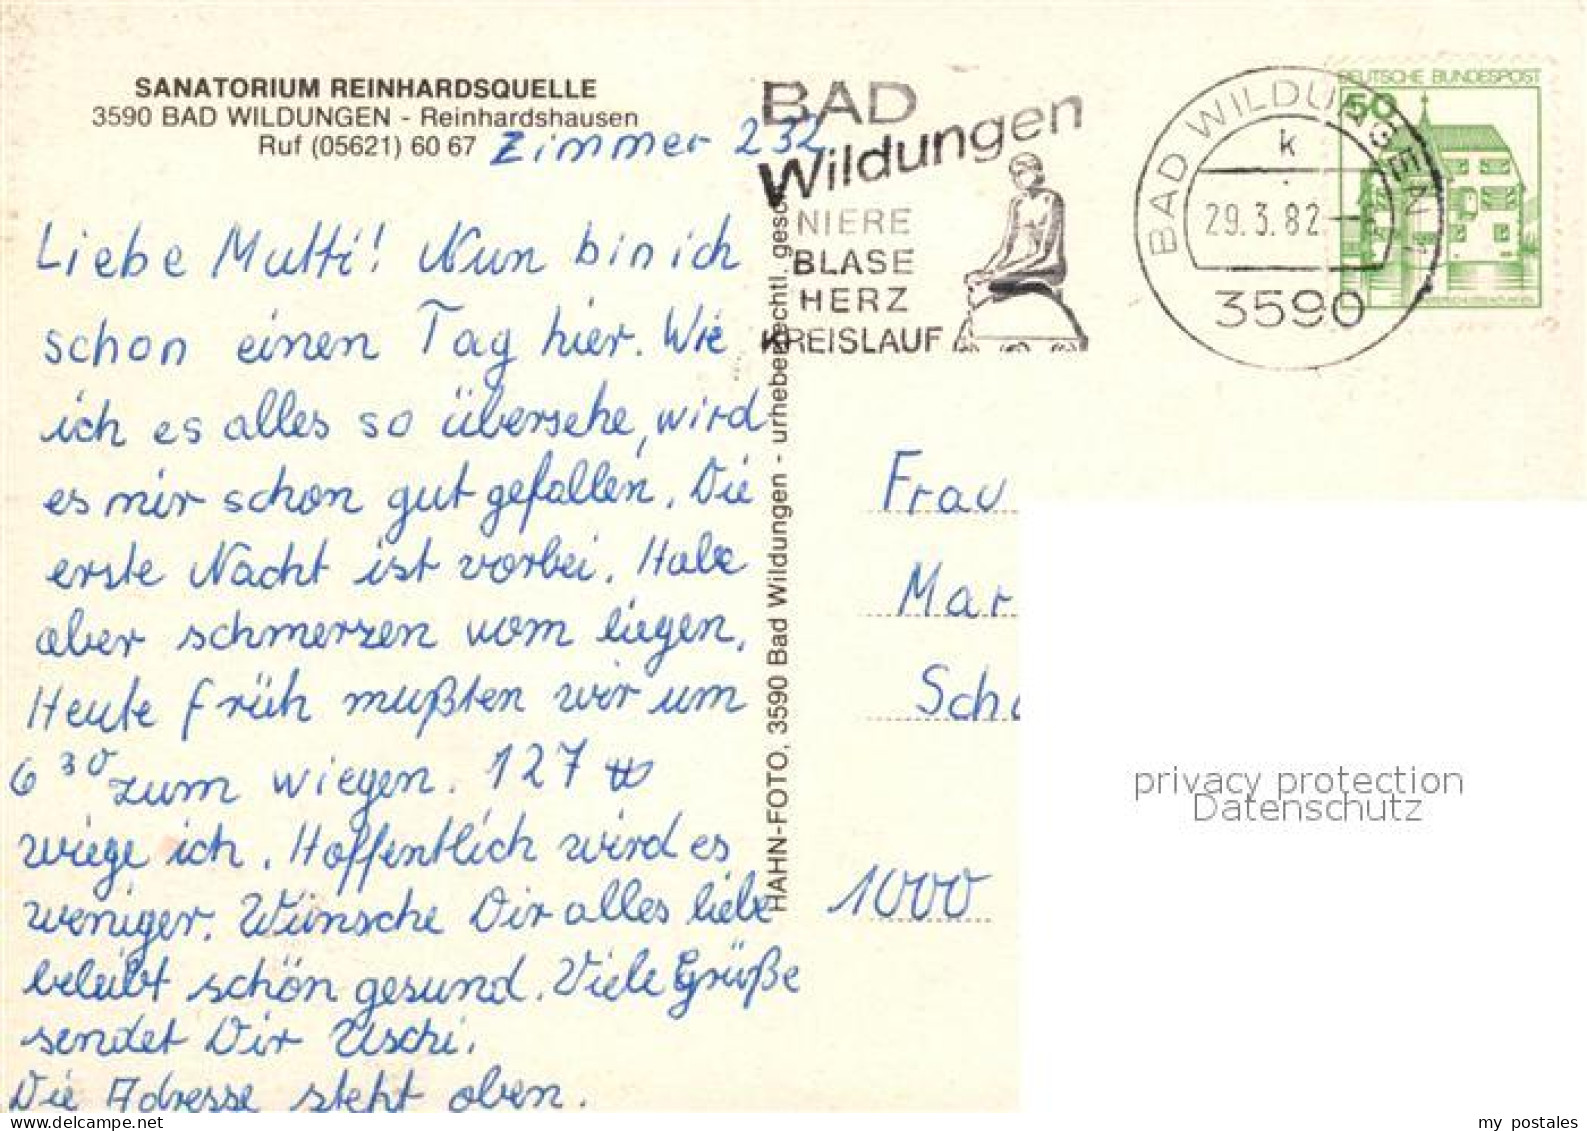 73107292 Bad Wildungen Sanatorium Reinhardsquelle Bad Wildungen - Bad Wildungen